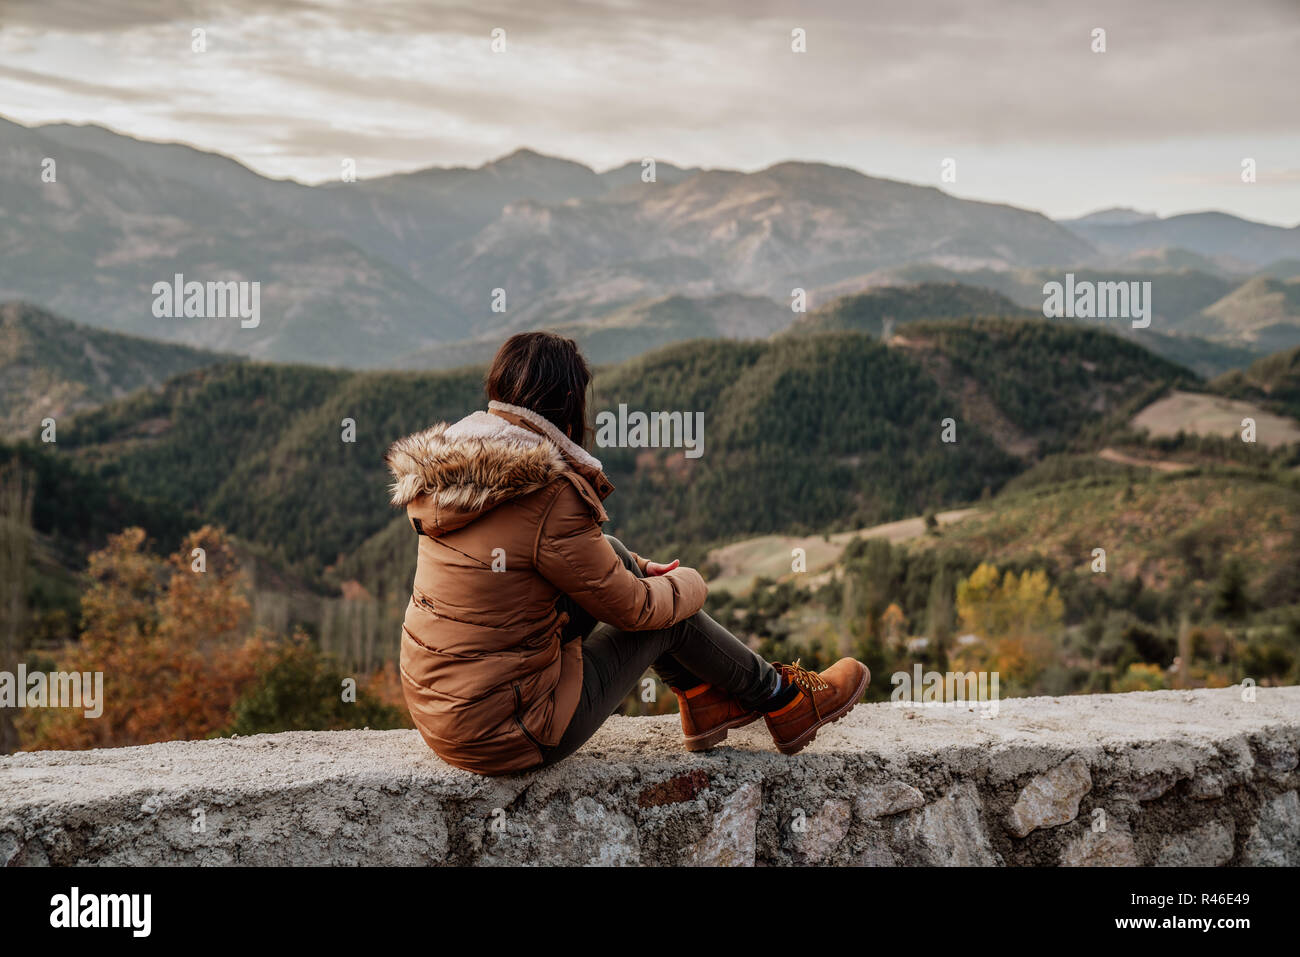 Frau traveler schaut am Rand der Klippe der Berge im Hintergrund. Stockfoto